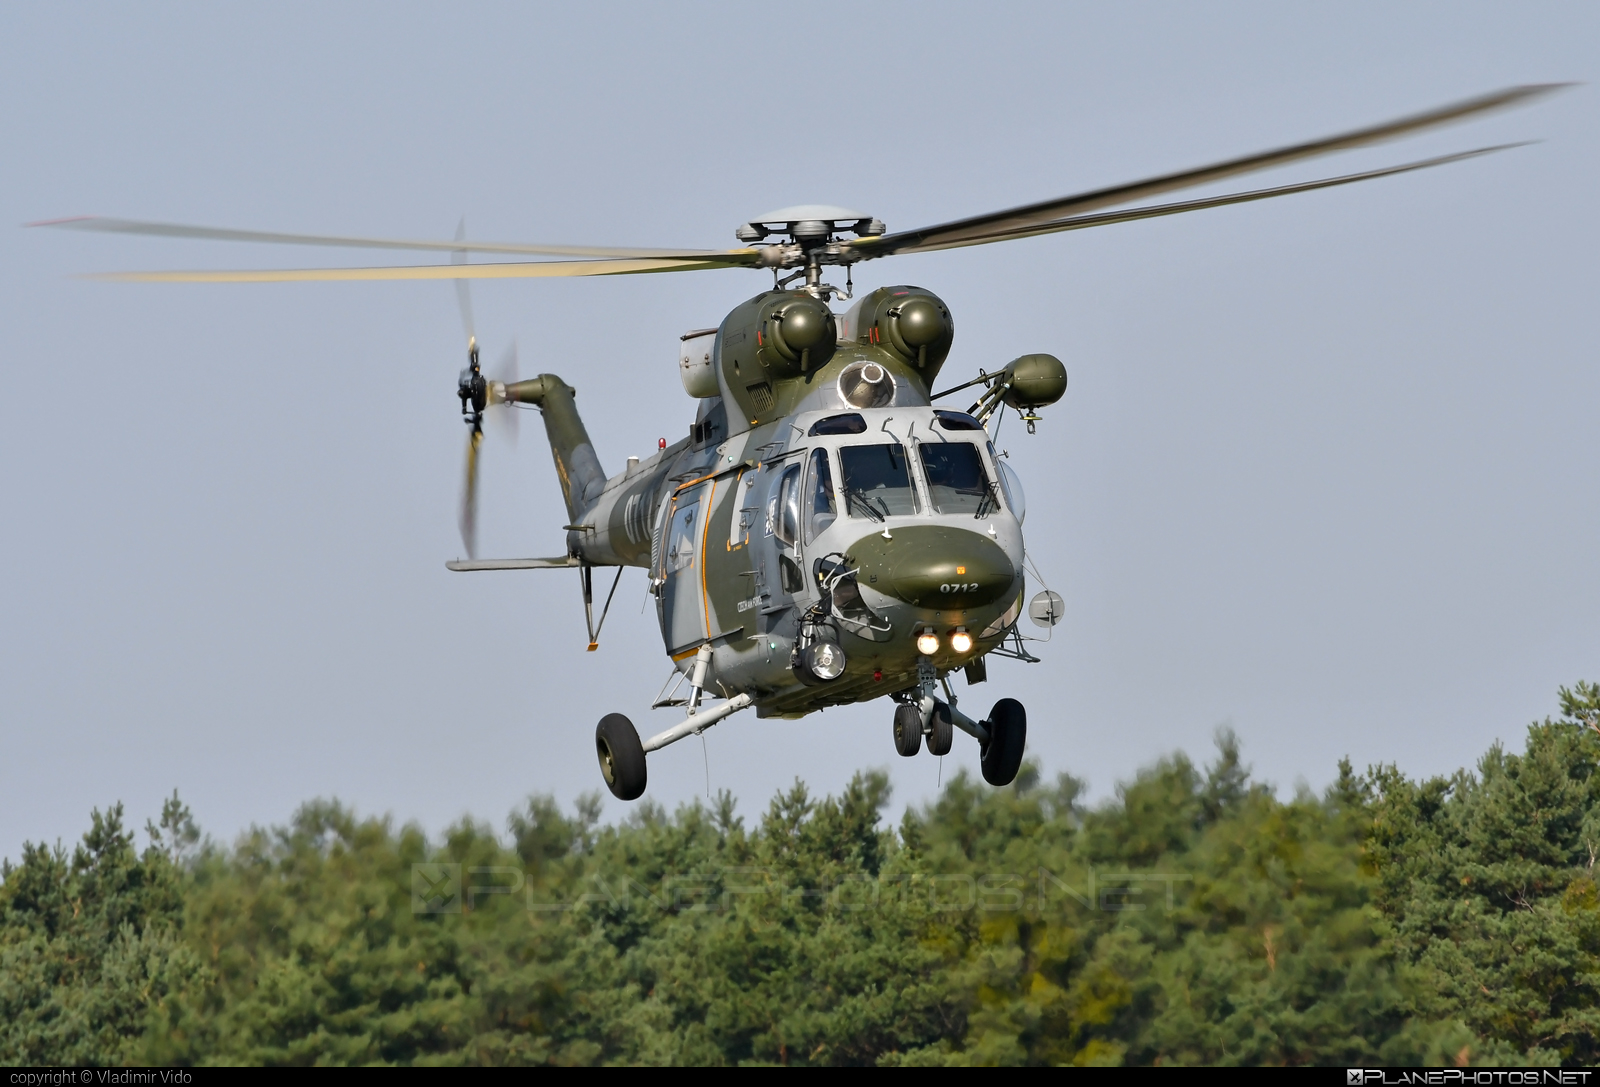 PZL-Świdnik W-3A Sokol - 0712 operated by Vzdušné síly AČR (Czech Air Force) #czechairforce #pzl #pzlswidnik #siaf2021 #vzdusnesilyacr #w3a #w3asokol #w3sokol